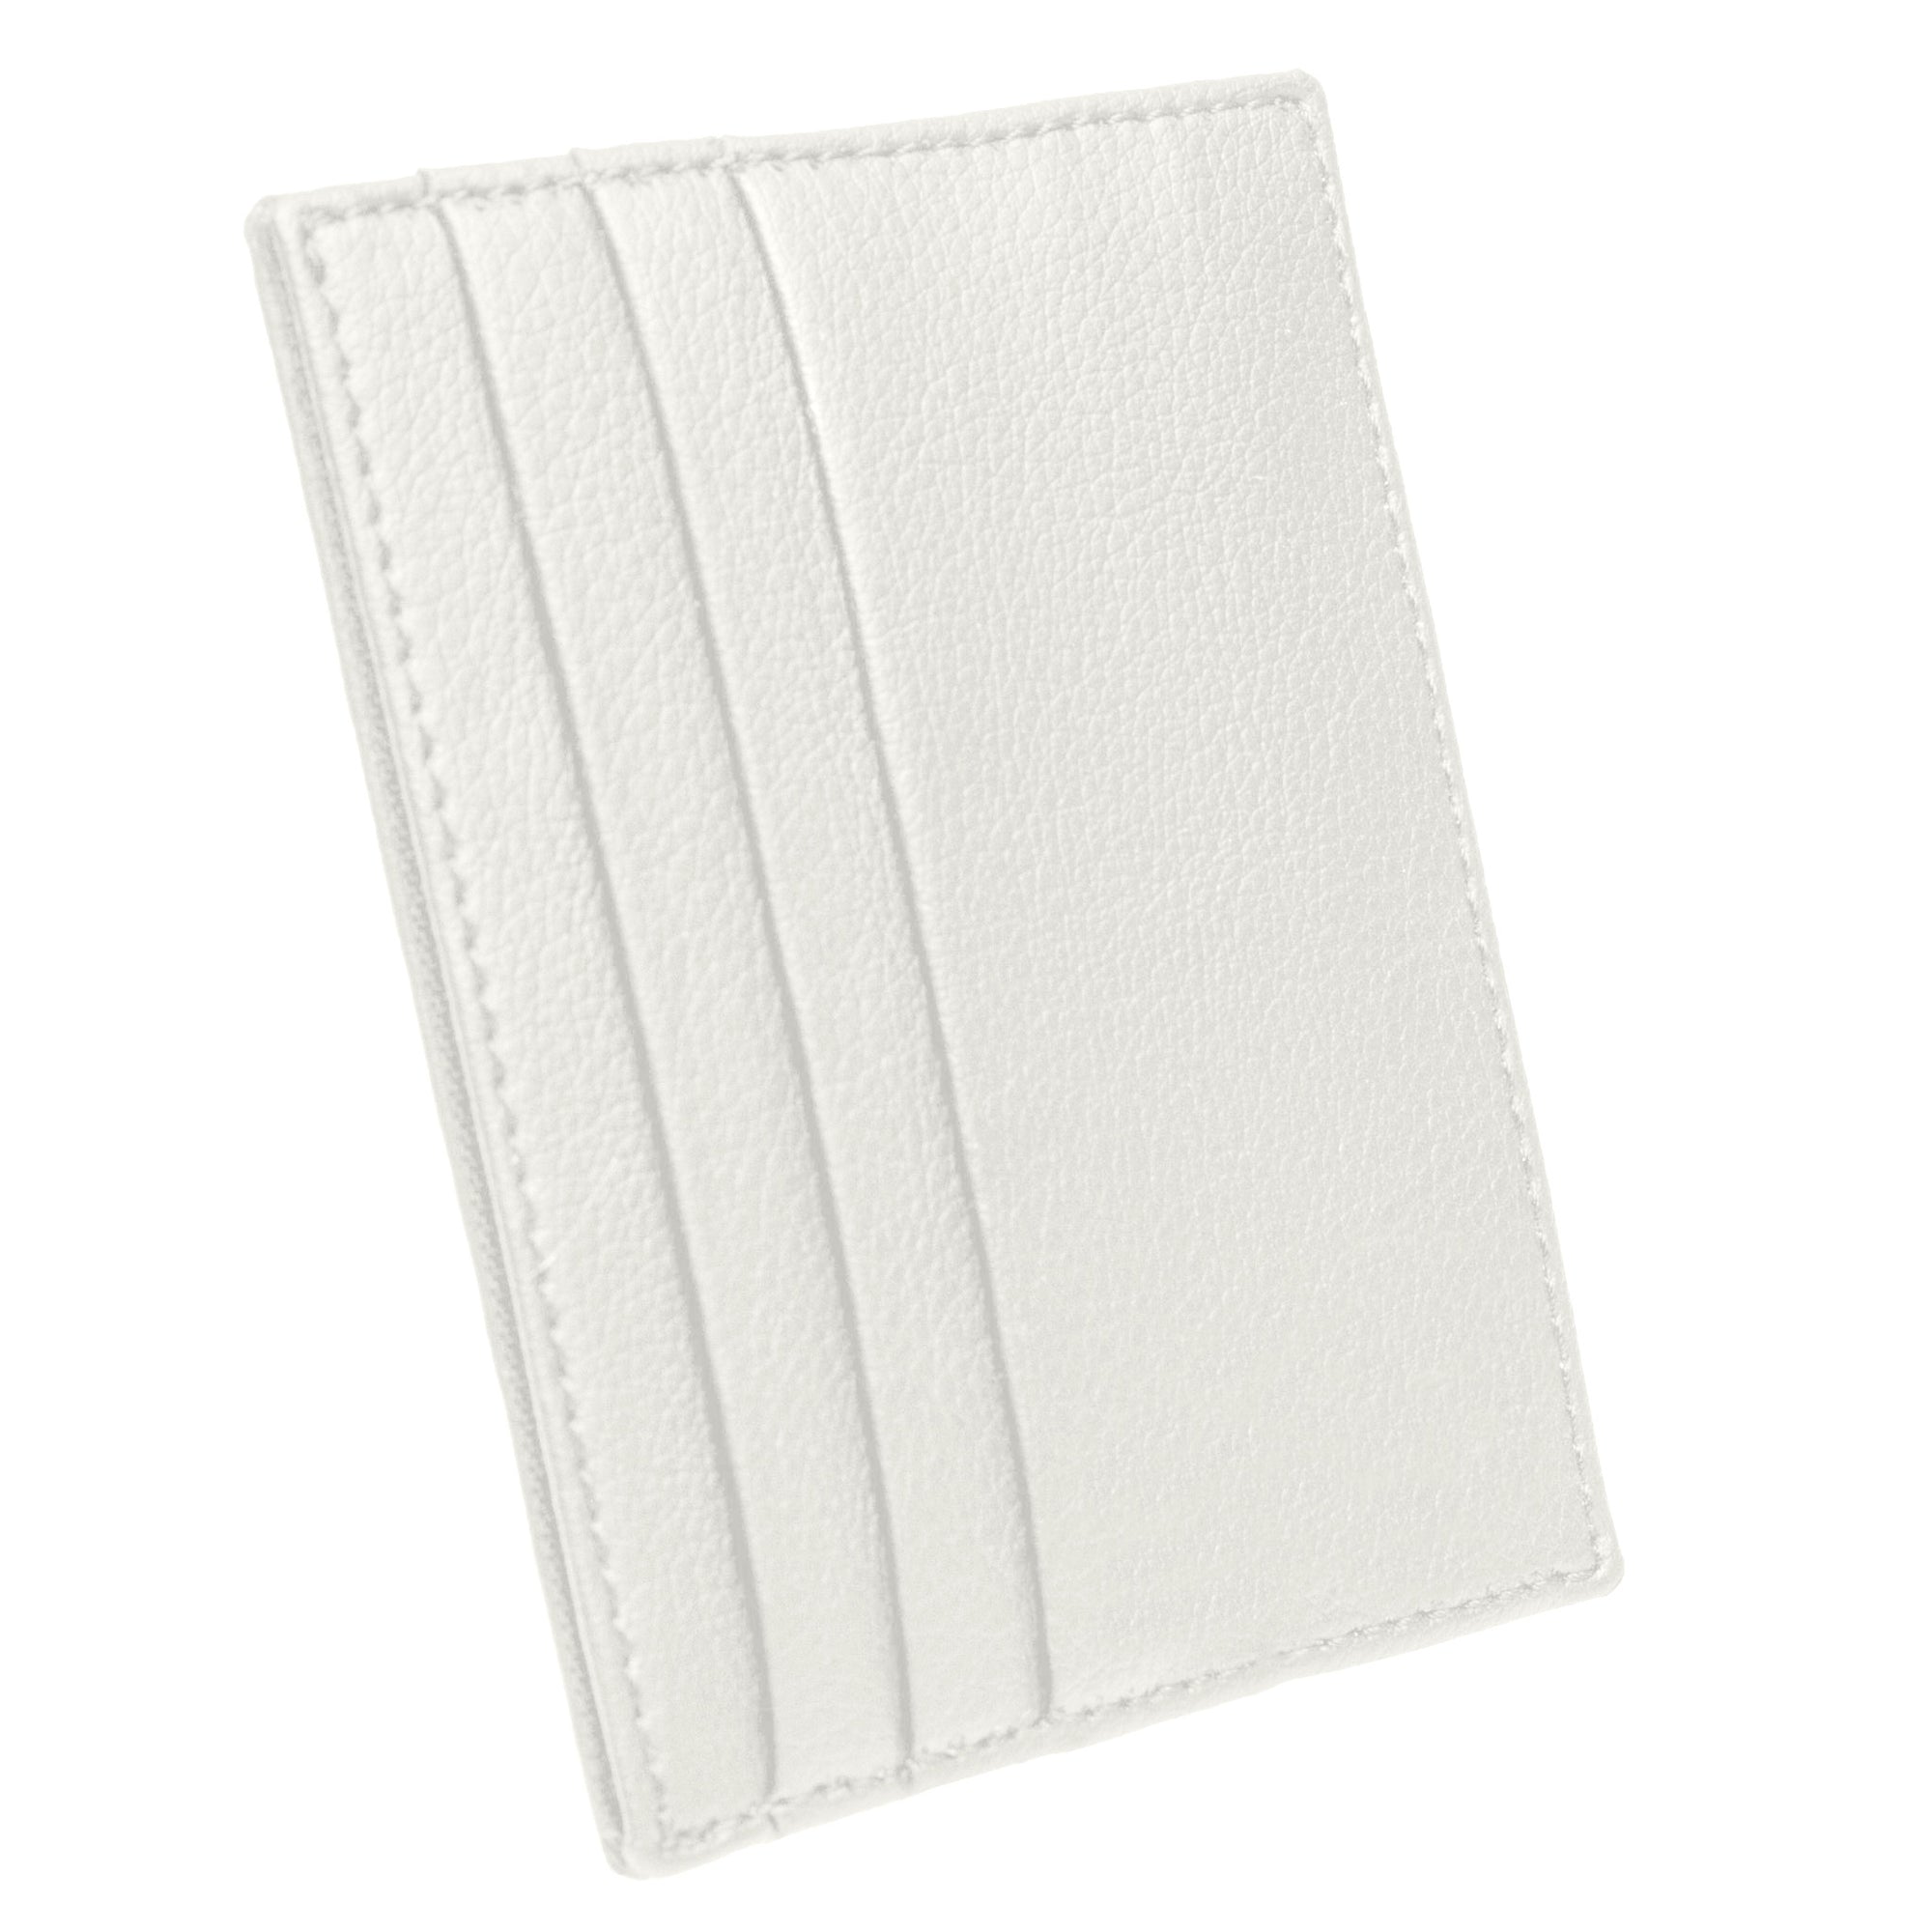 White Cardholder Wallet